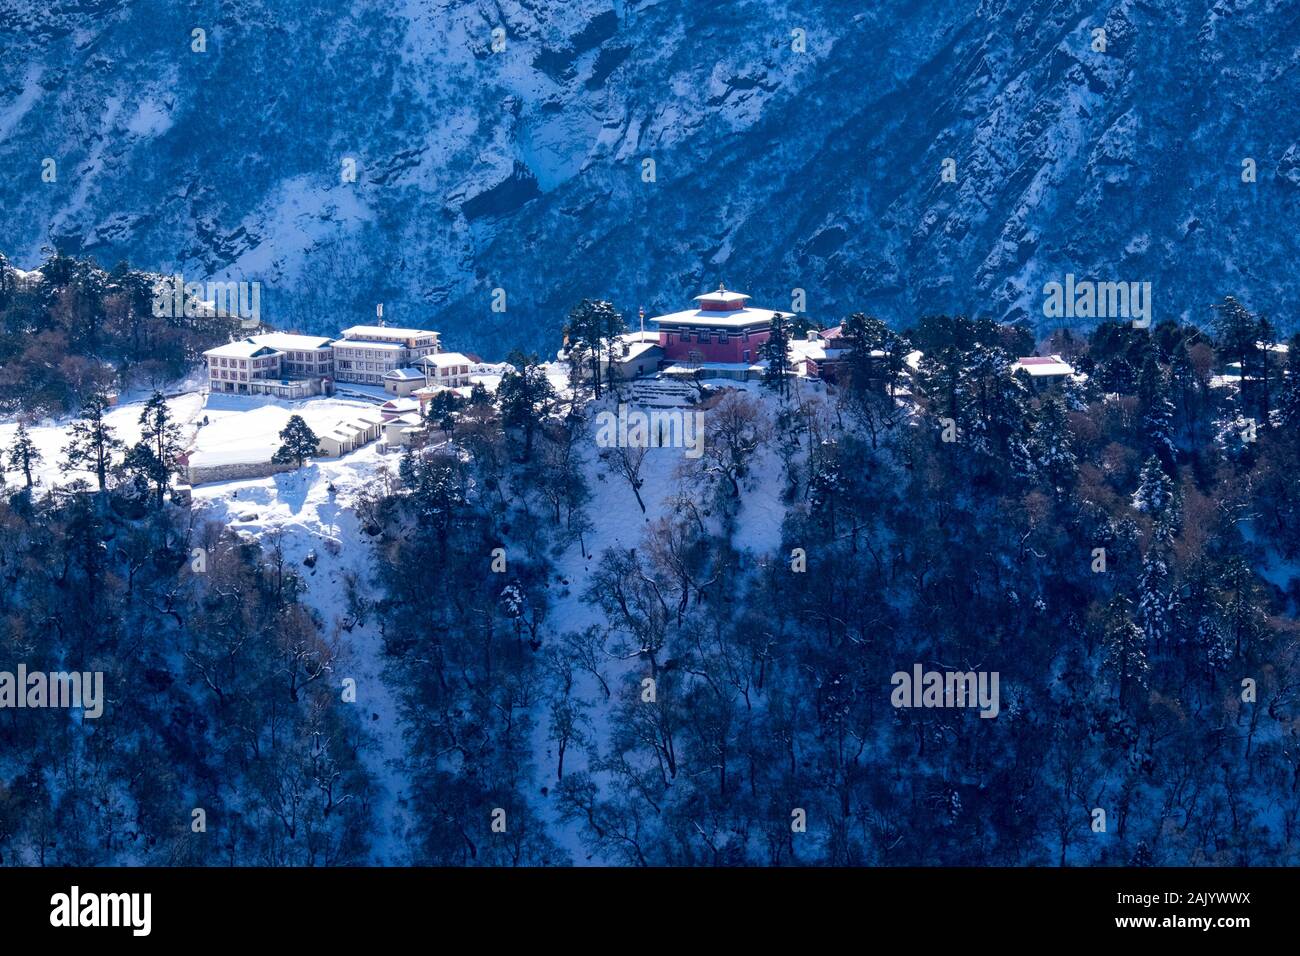 Monastero di Tengboche / Gompa nella regione del Khumbu del Nepal Himalaya in inverno la neve Foto Stock